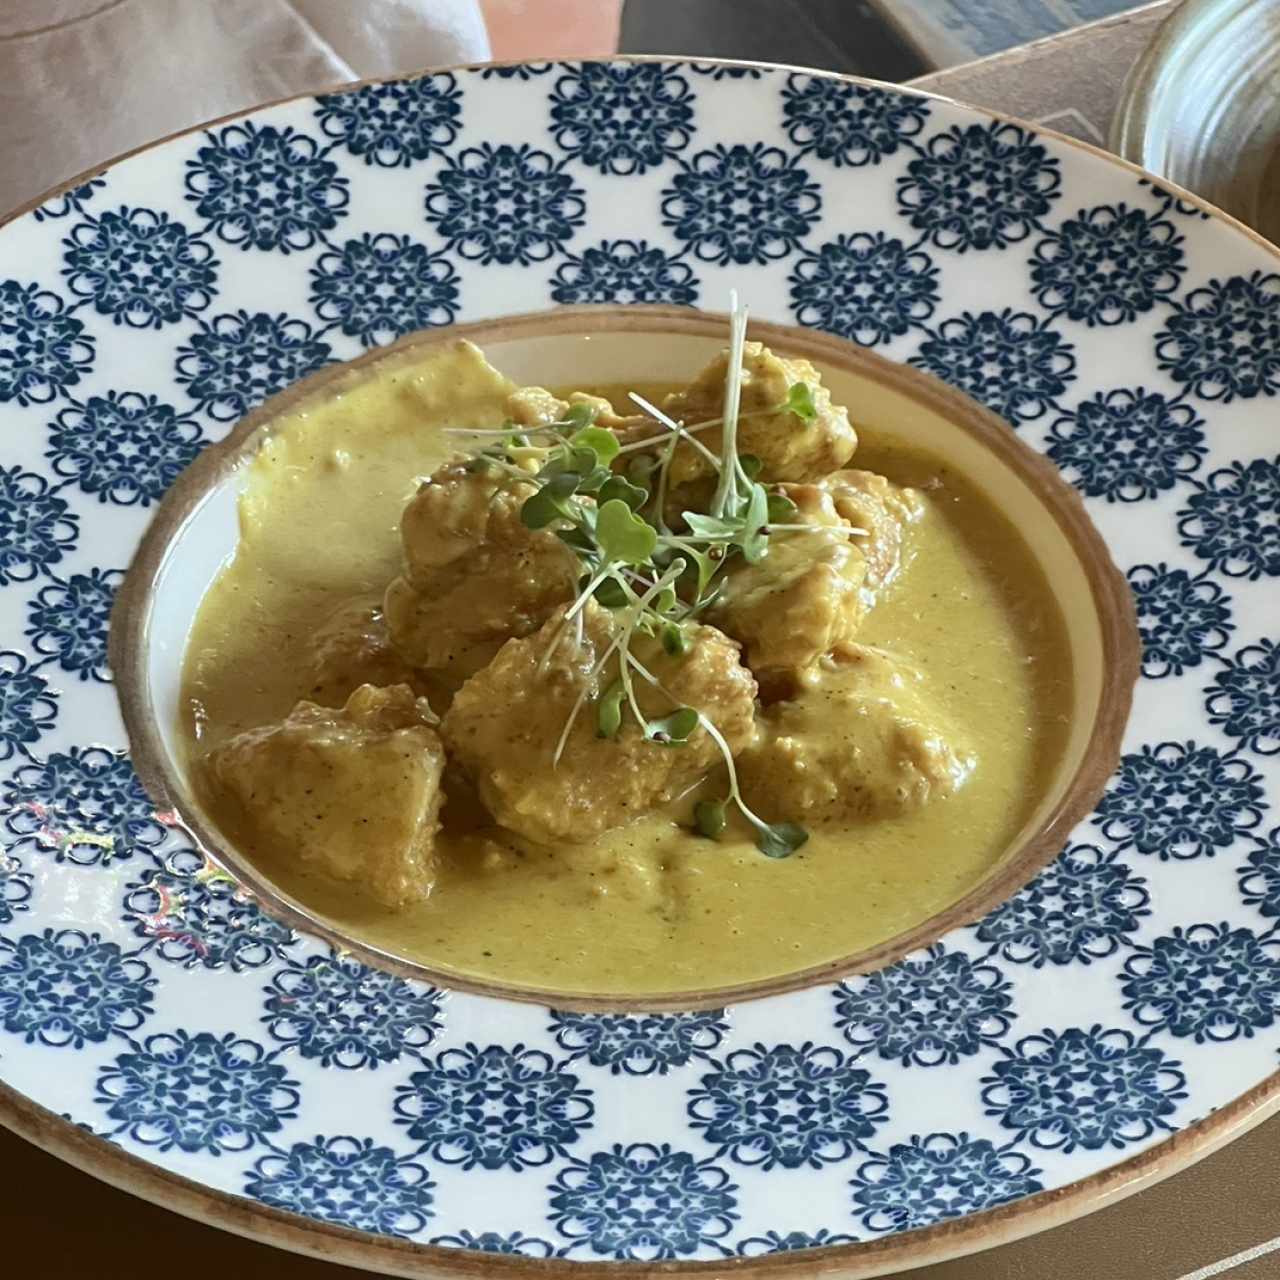 Pollo curry